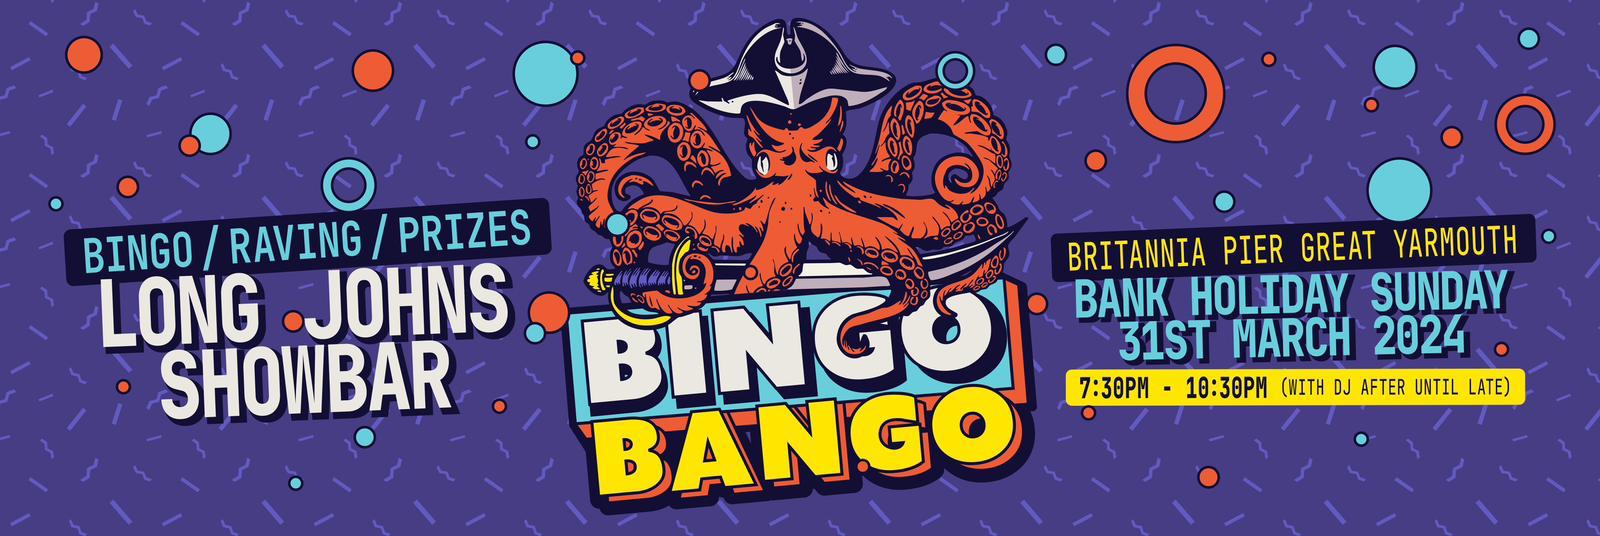 Bingo bongo